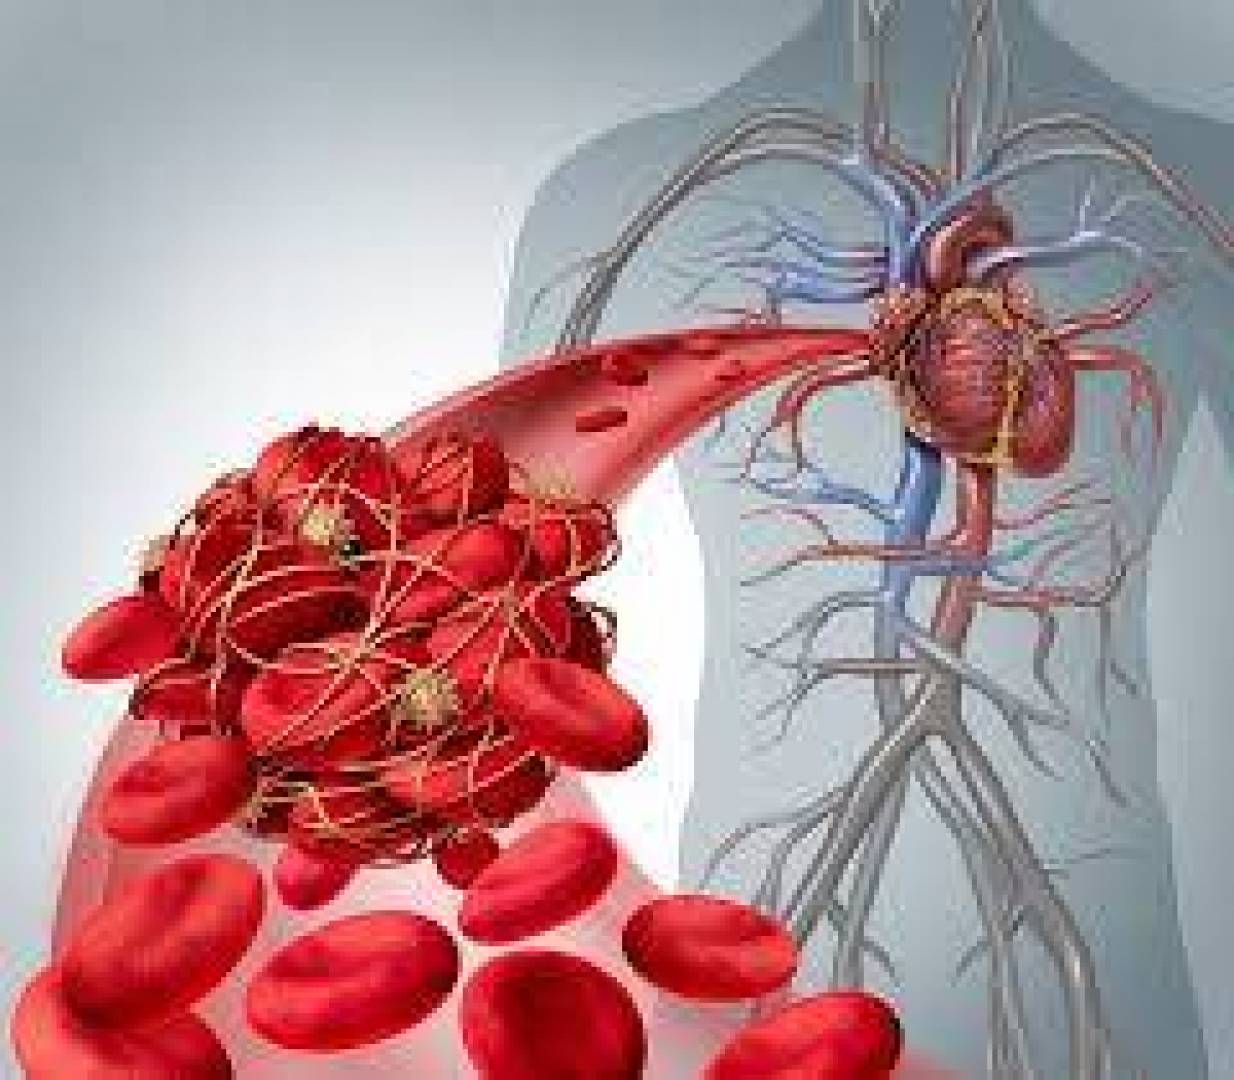 أنواع الاختبارات الطبية التي تكشف عن الجلطات الدموية